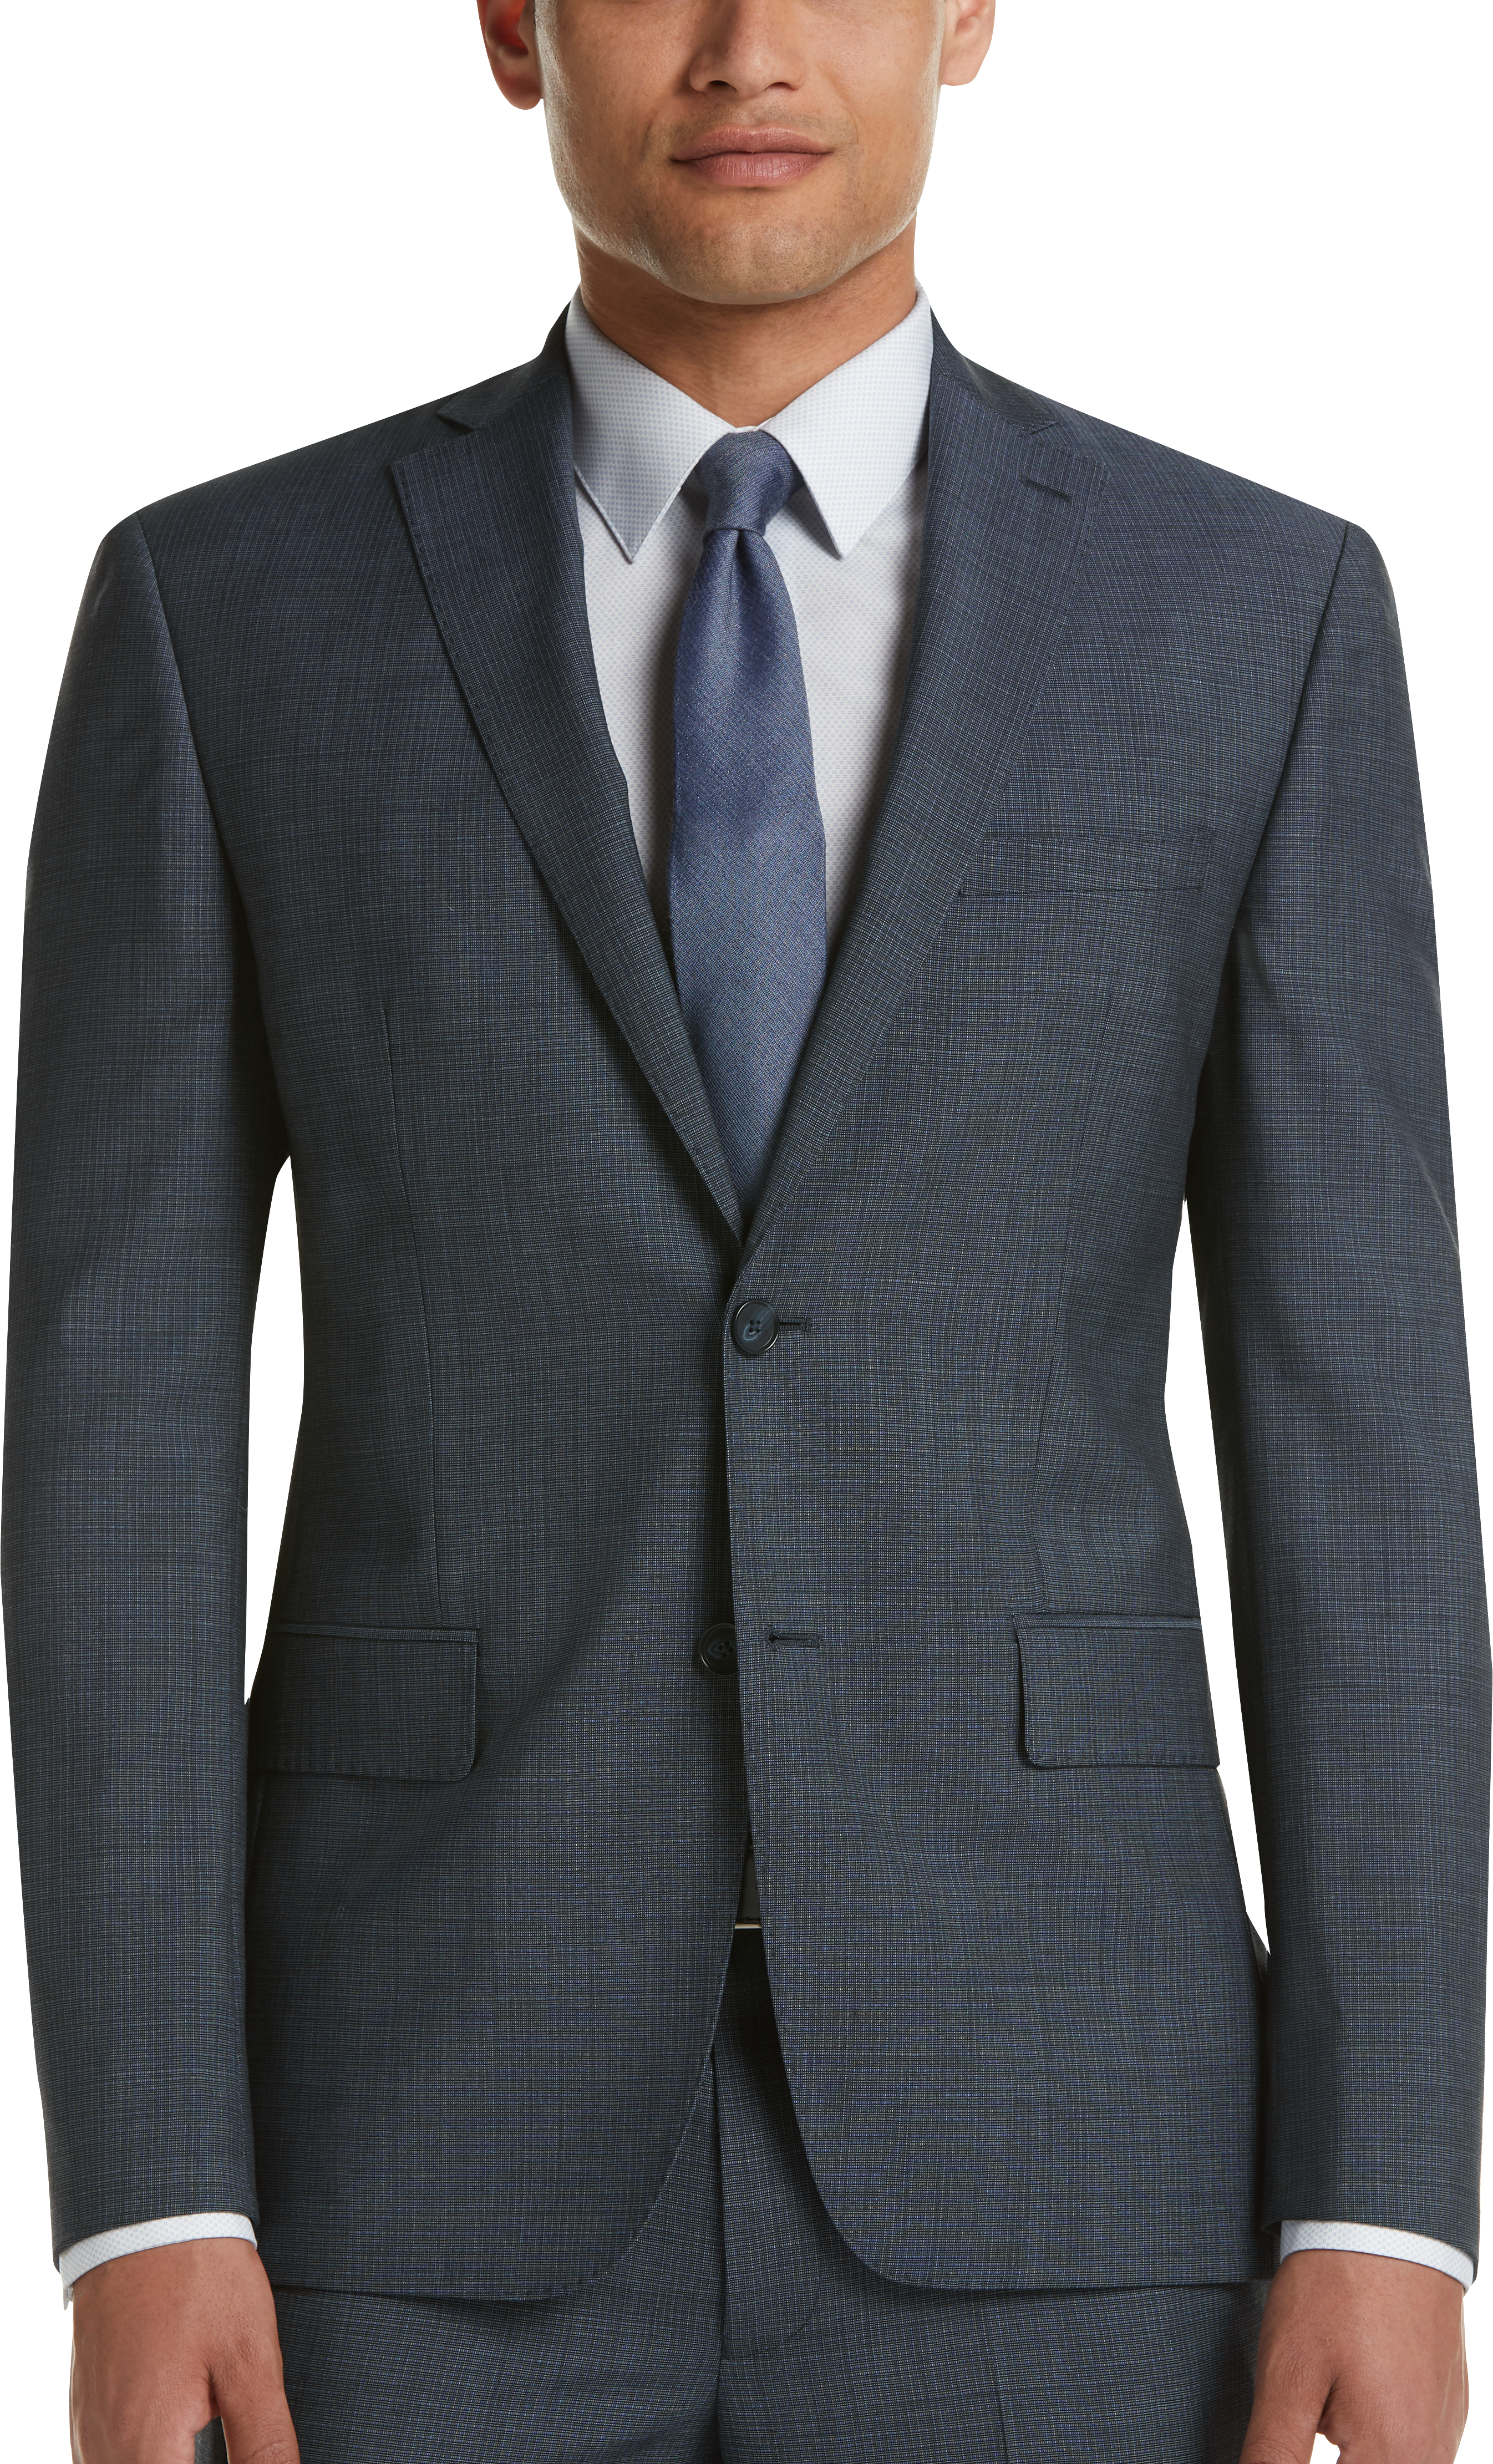 DKNY Blue Check Extreme Slim Fit Suit - Men's Sale | Men's Wearhouse